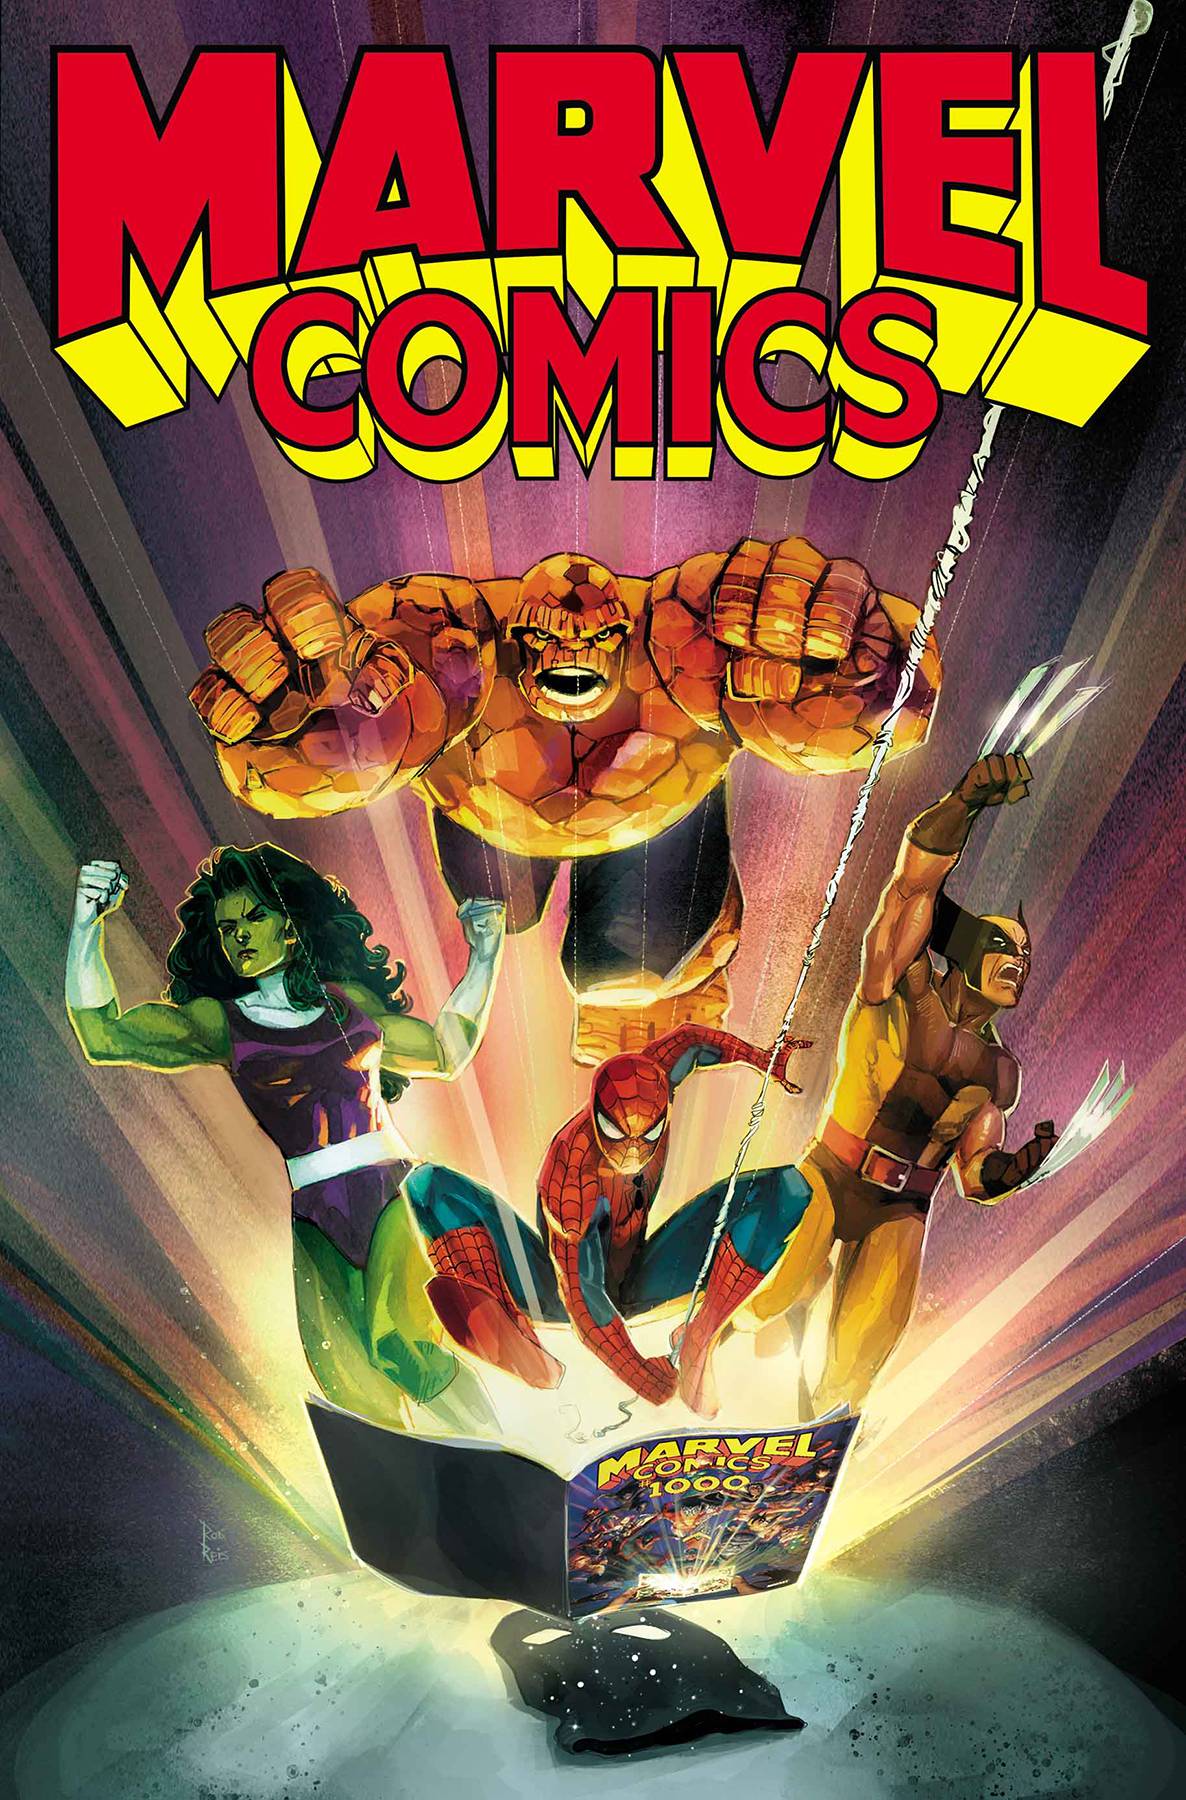 Marvel Comics #1001 - State of Comics